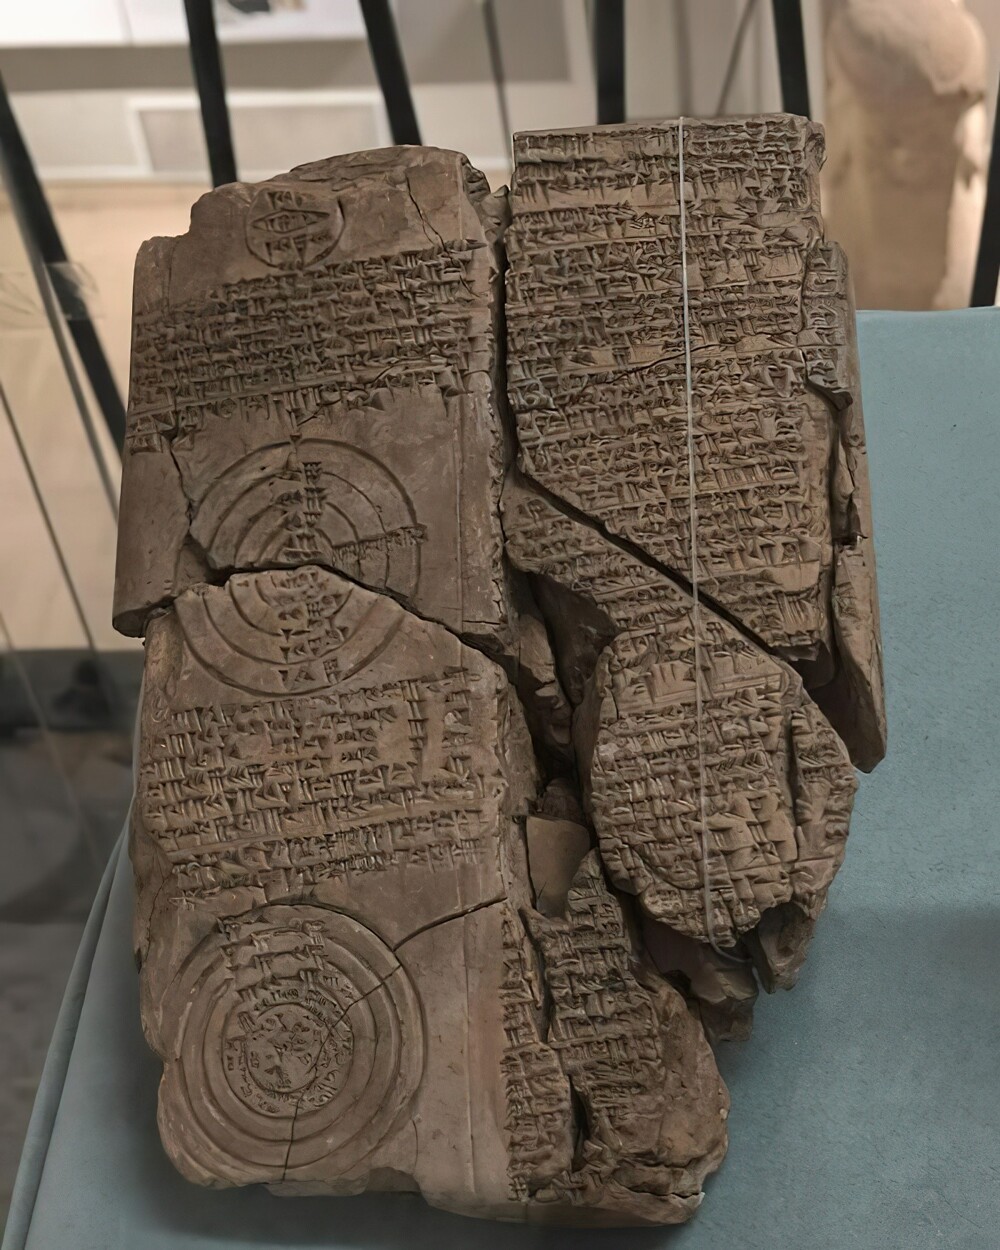 15. В иракском музее хранится древняя глиняная табличка, обнаруженная в Уруке (Варка) на юге Ирака. Эта табличка покрыта клинописью и имеет три геометрических круга, содержащие астрономические расчеты